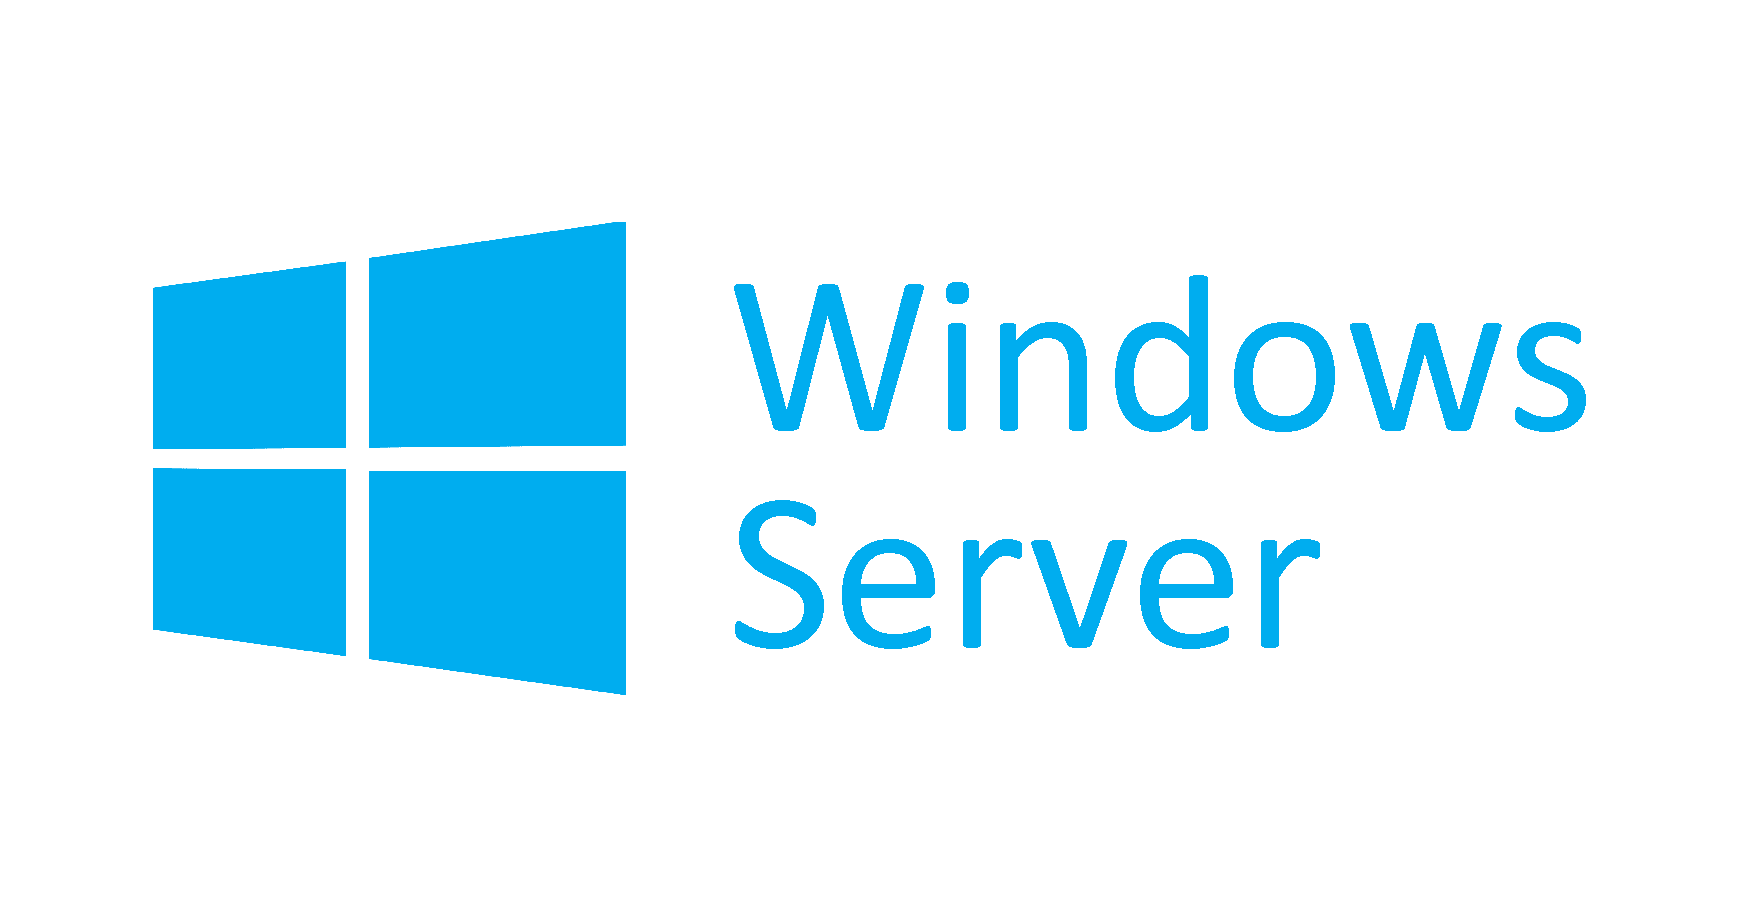 windows-server-corrige-problemas-de-area-de-trabalho-remota